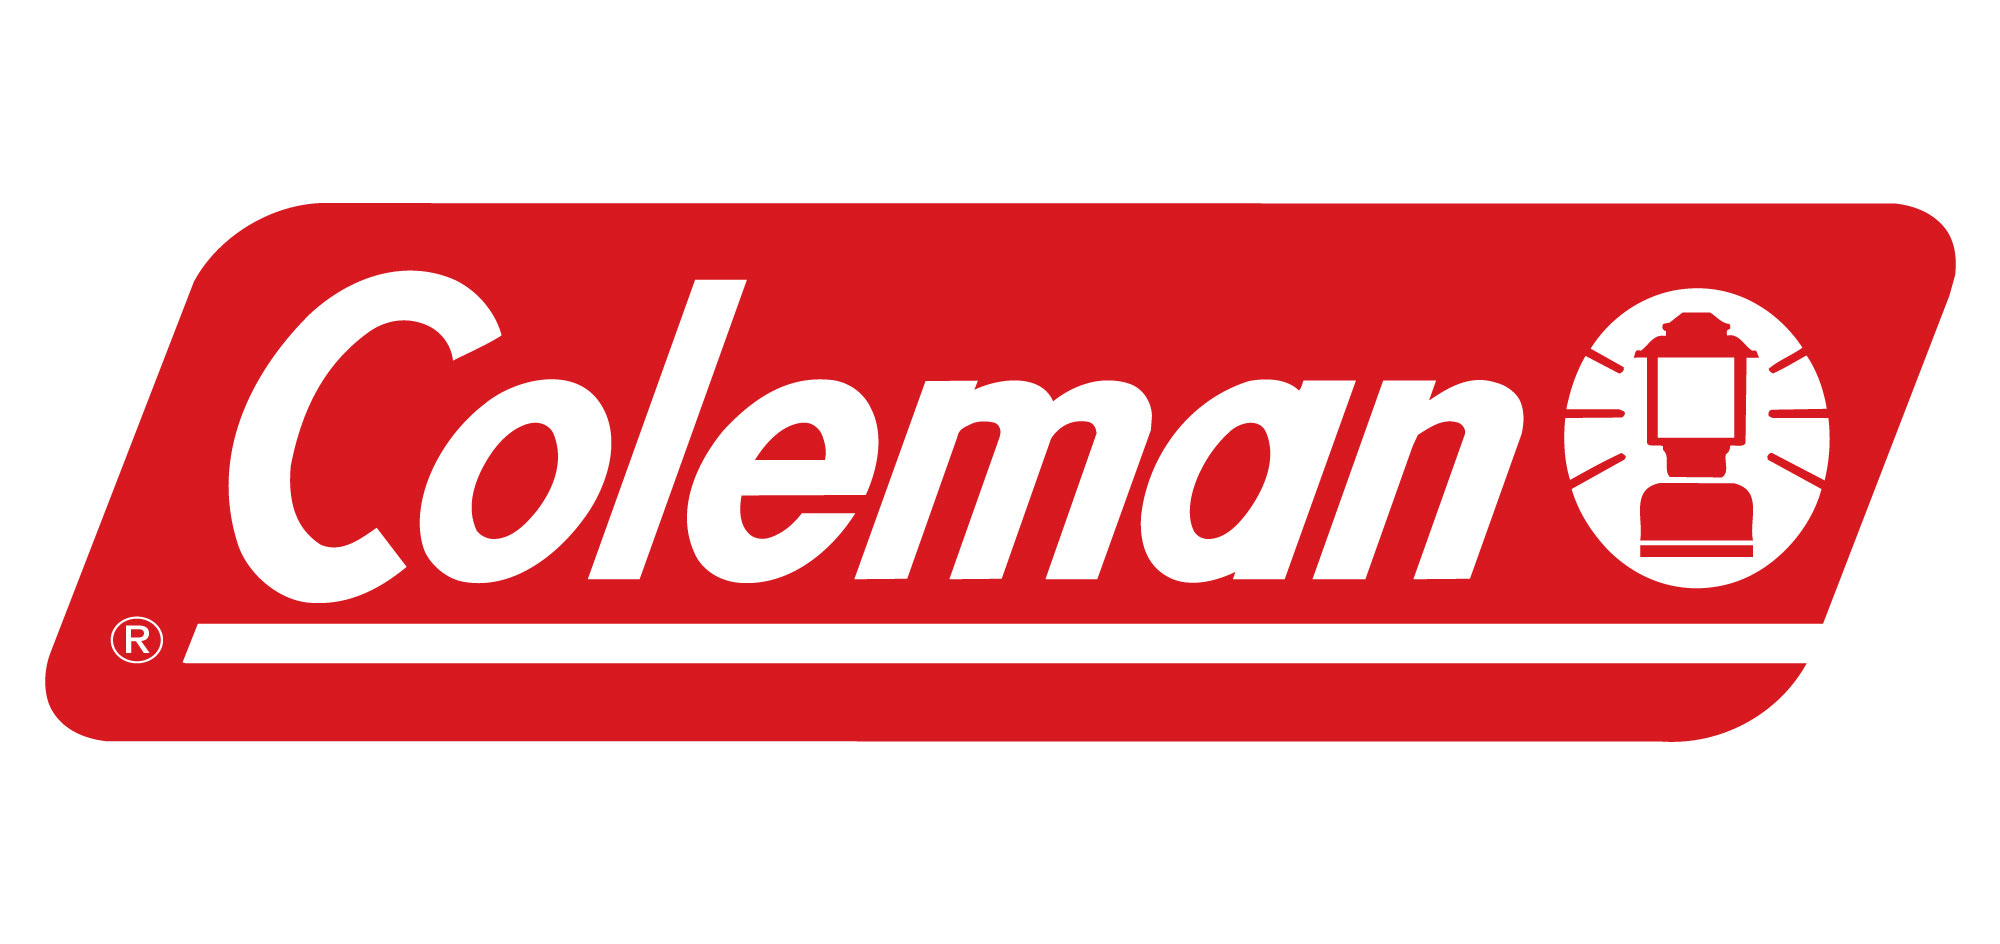 Coleman to jeden z liderów na rynku outdoorowym. 